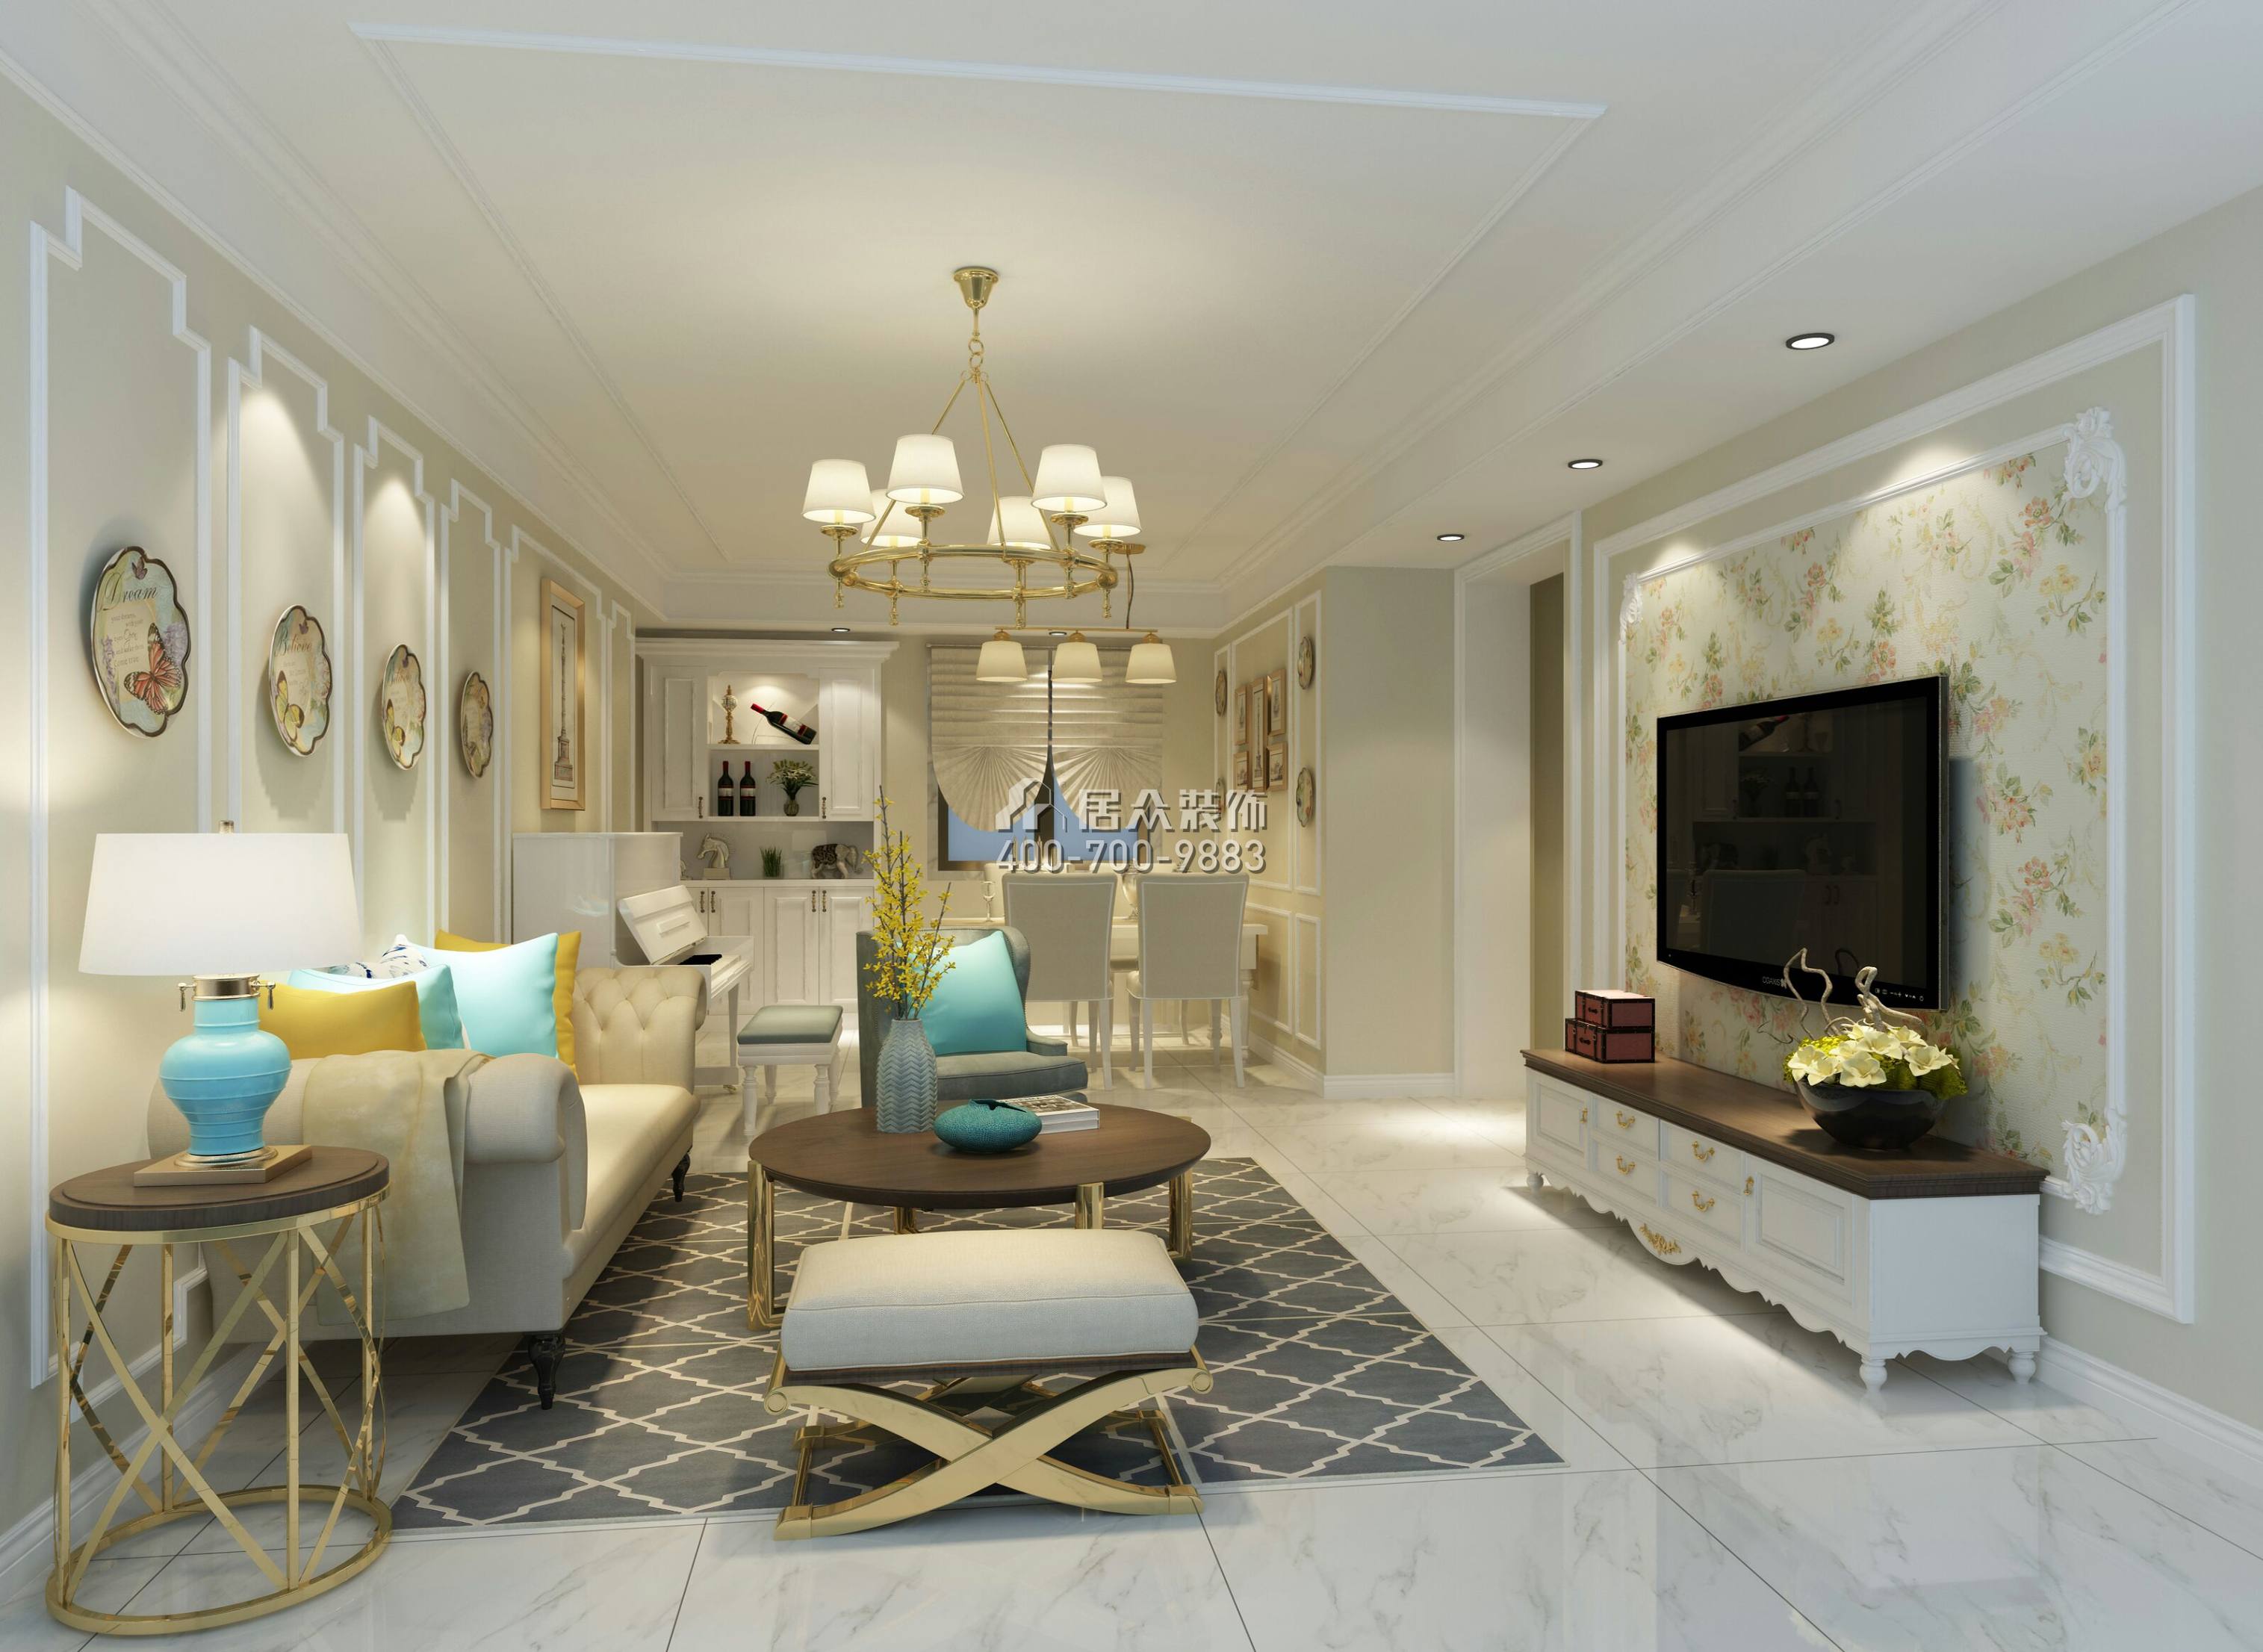 星河传奇一期102平方米美式风格平层户型客厅装修效果图